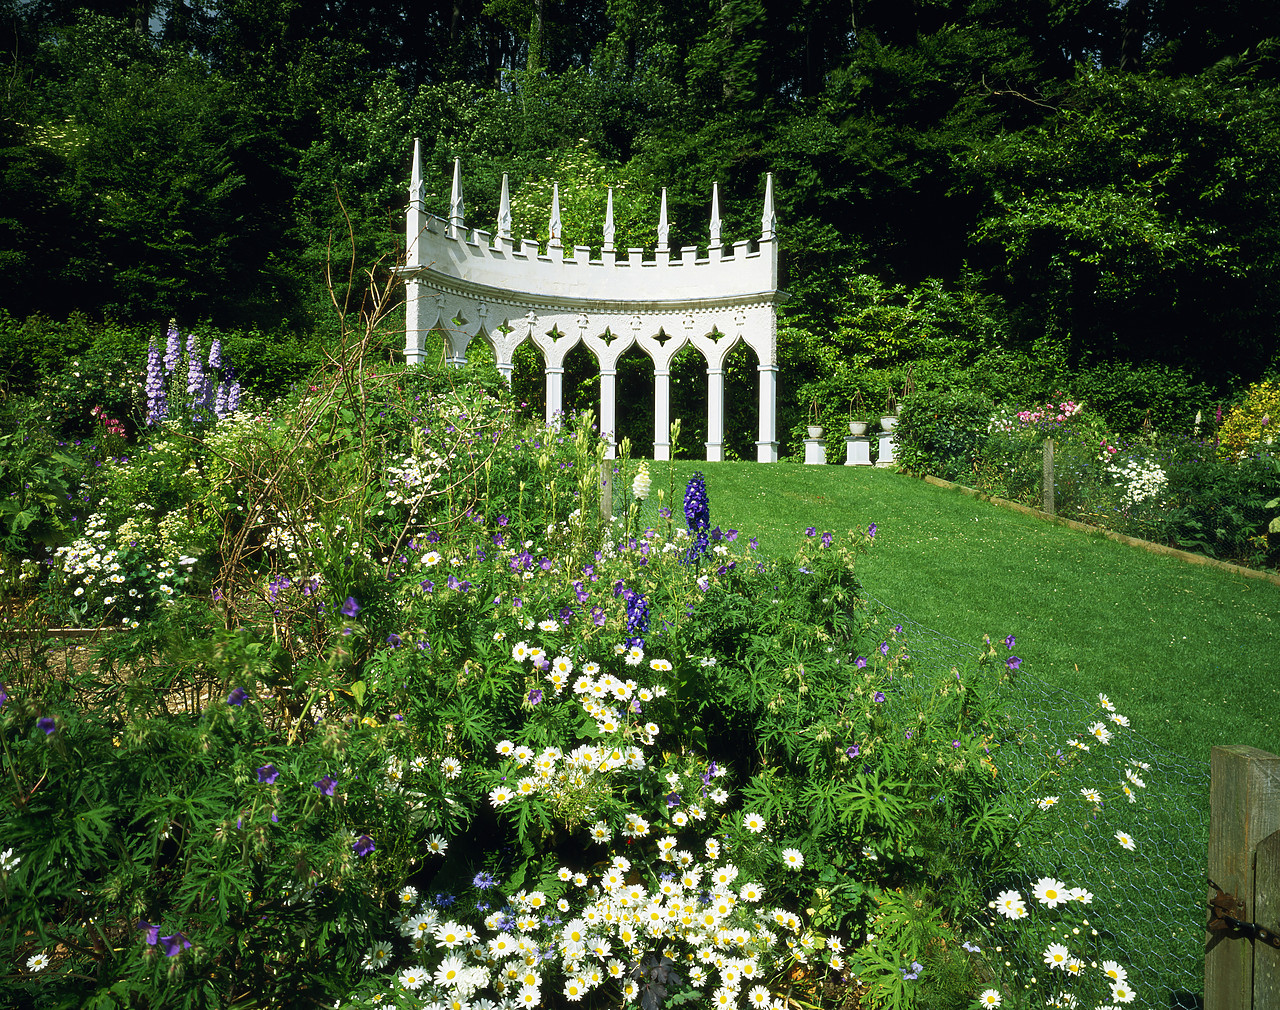 #030218-2 - Painswick Rococo Gardens, Painswick, Gloucestershire, England